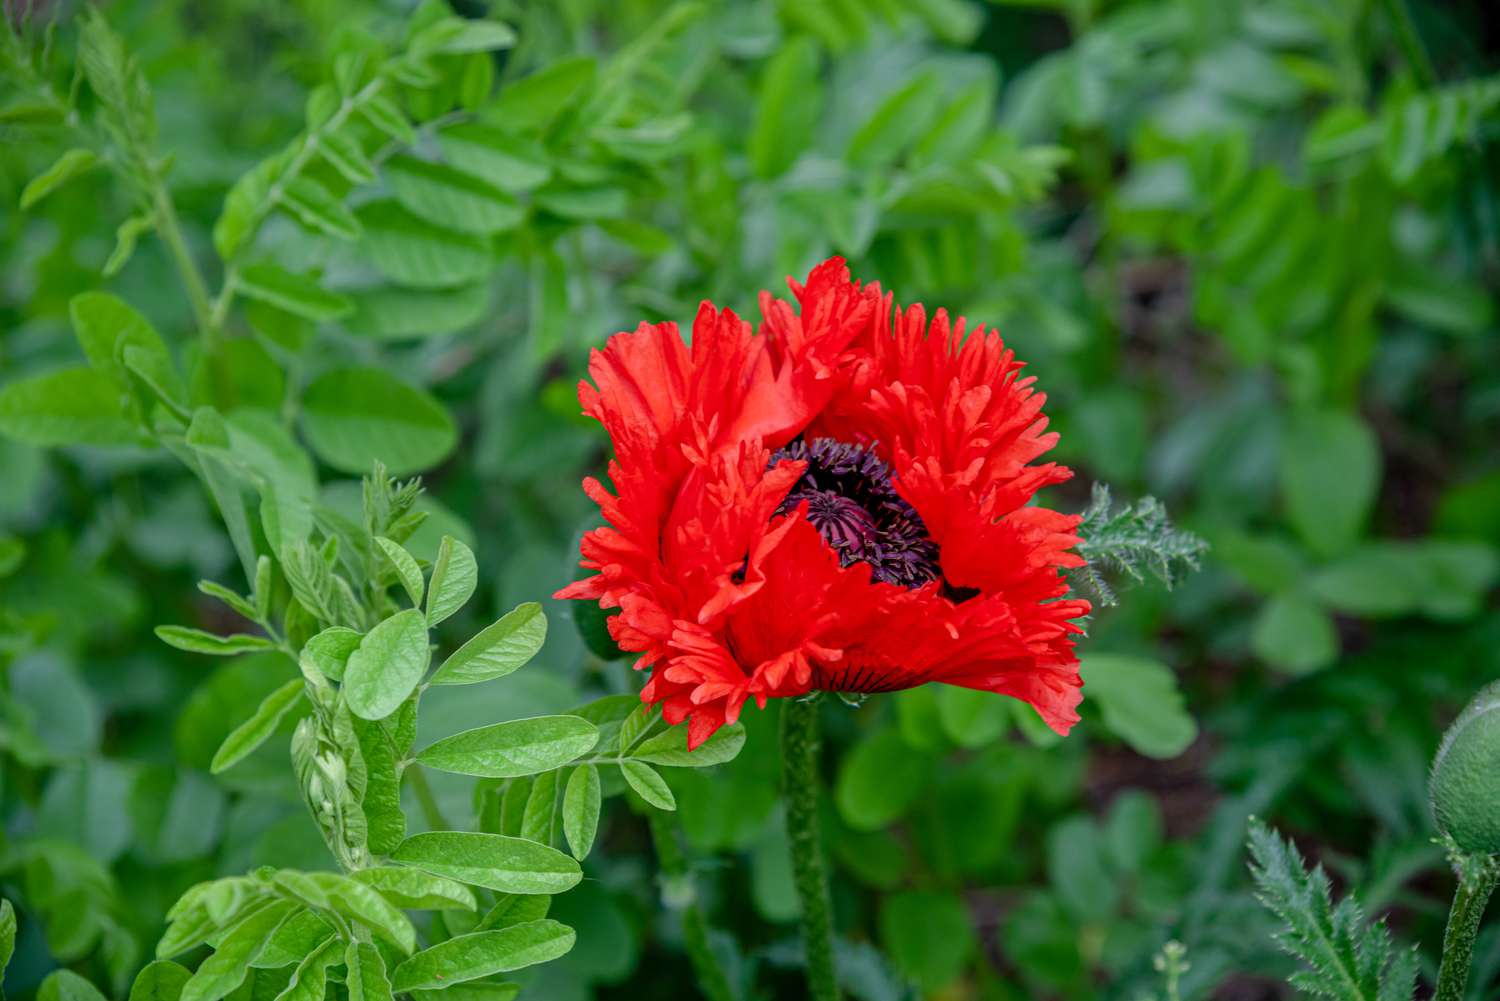 Leuchtend rote 'Turkenlouis'-Mohnblüte neben kleinen ovalen Blättern